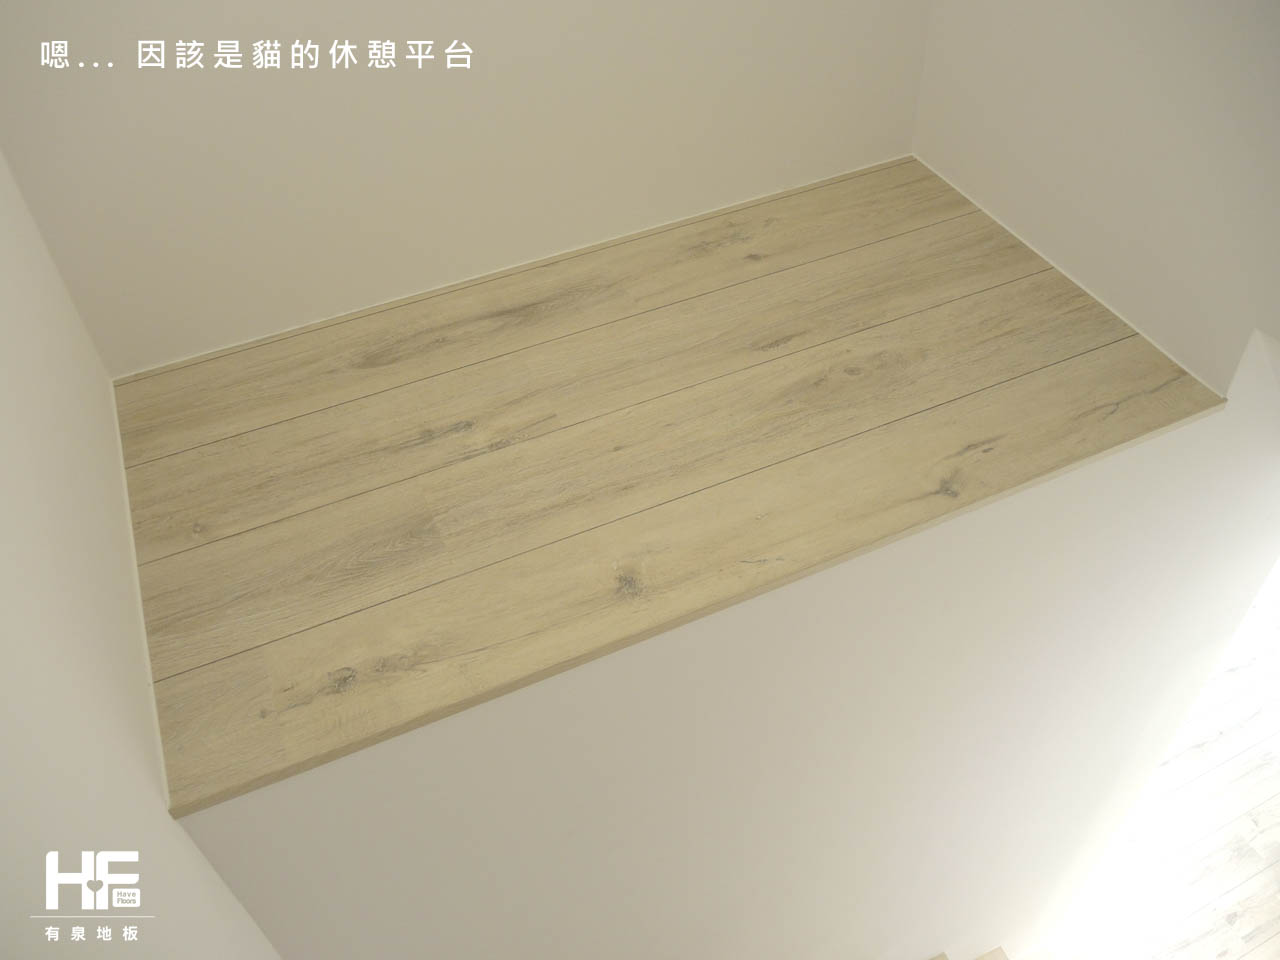 超耐磨地板 木地板 Egger超耐磨地板 萊茵倒角系列 波爾多白橡 MJ-4569-2015-12-03 (5)